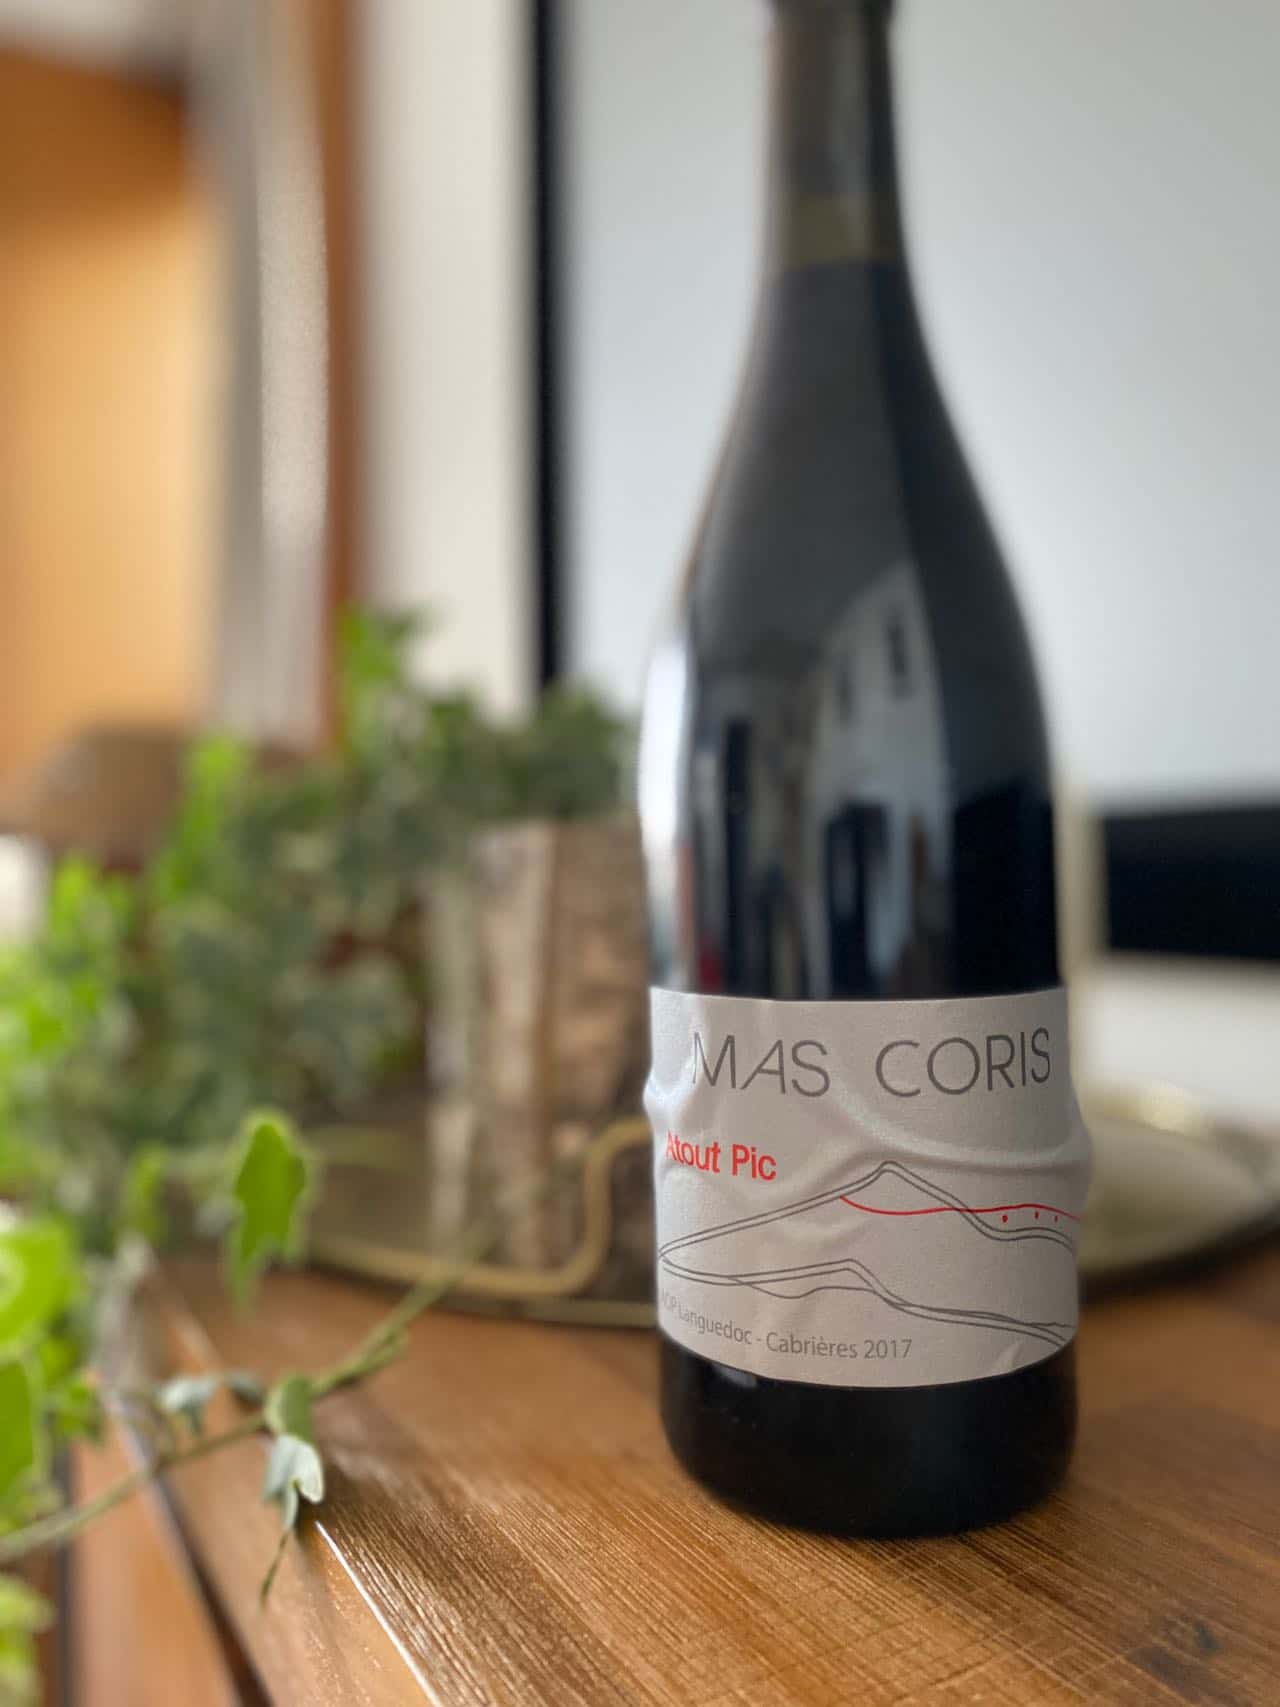 Dégustation à la volée #25 : Vin rouge Atout Pic du Mas Coris 2017